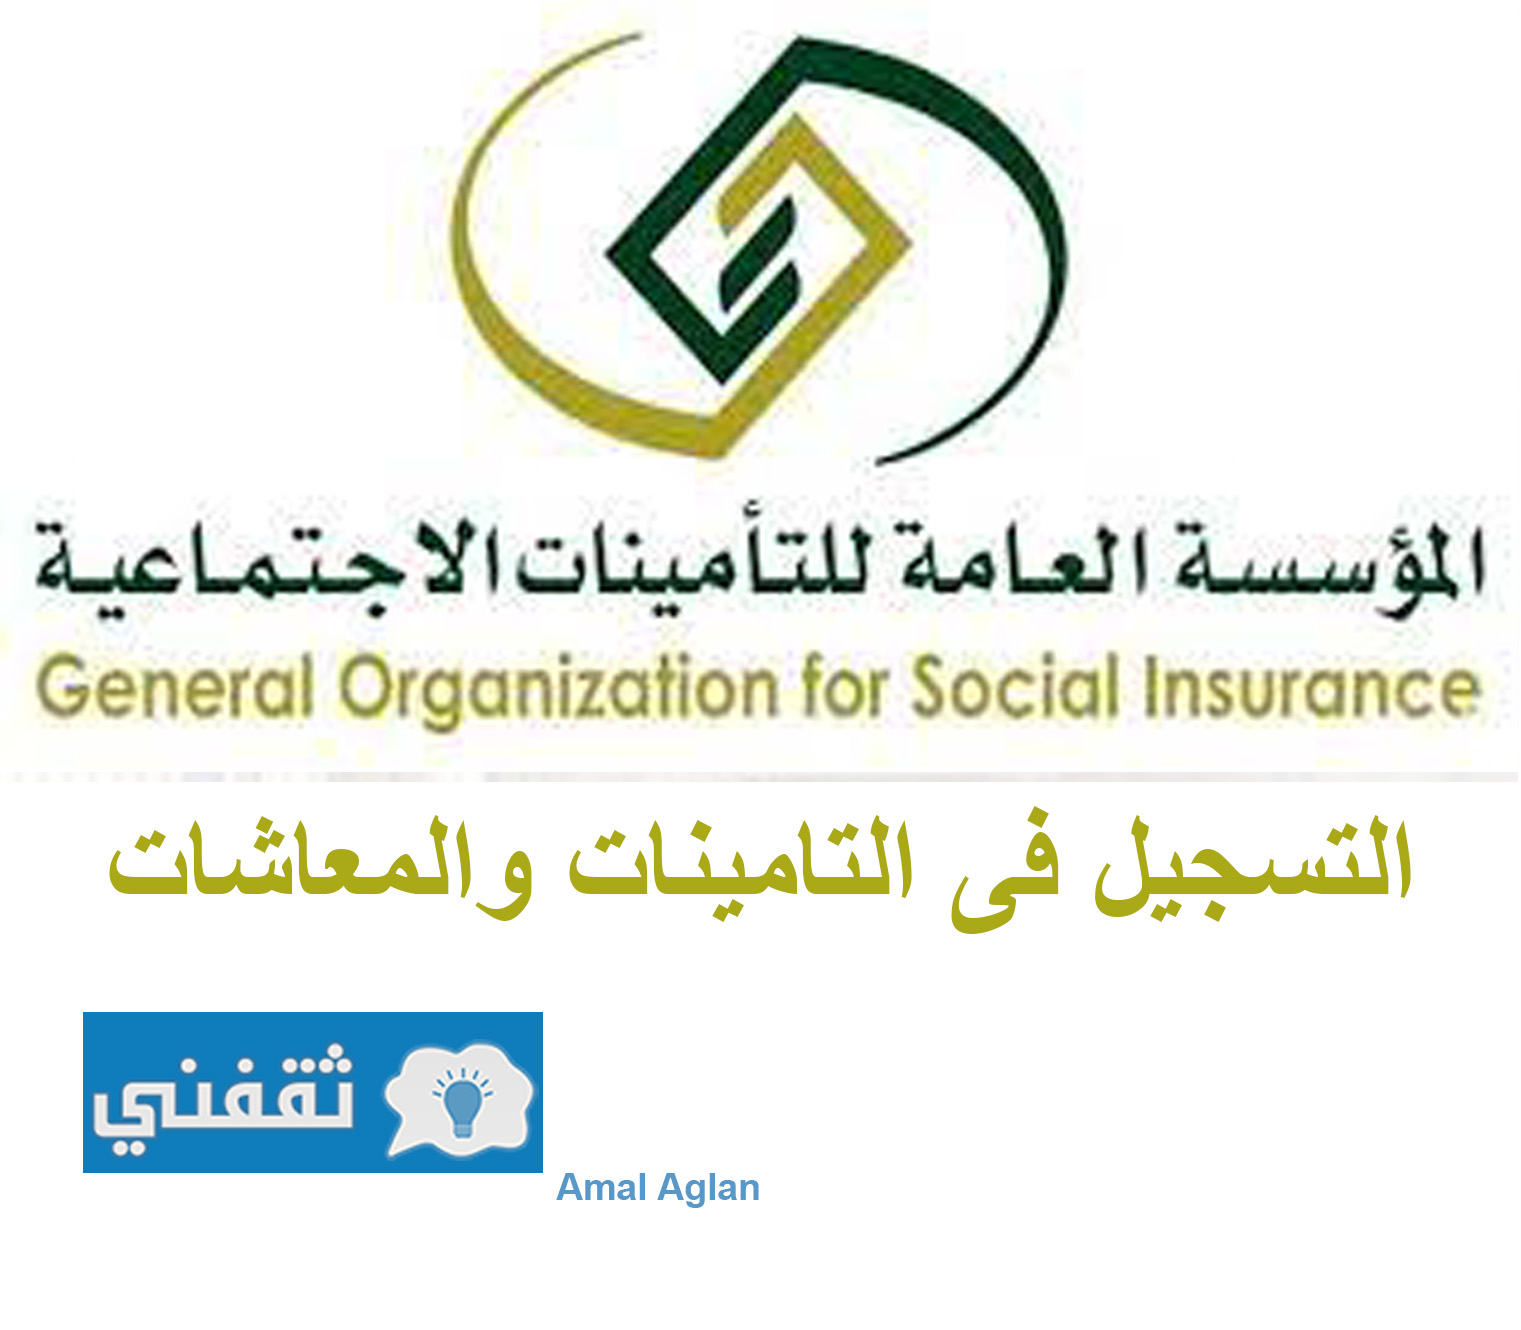 خطوات التقديم والتسجيل بالتأمينات والمعاشات بالمملكة العربية السعودية